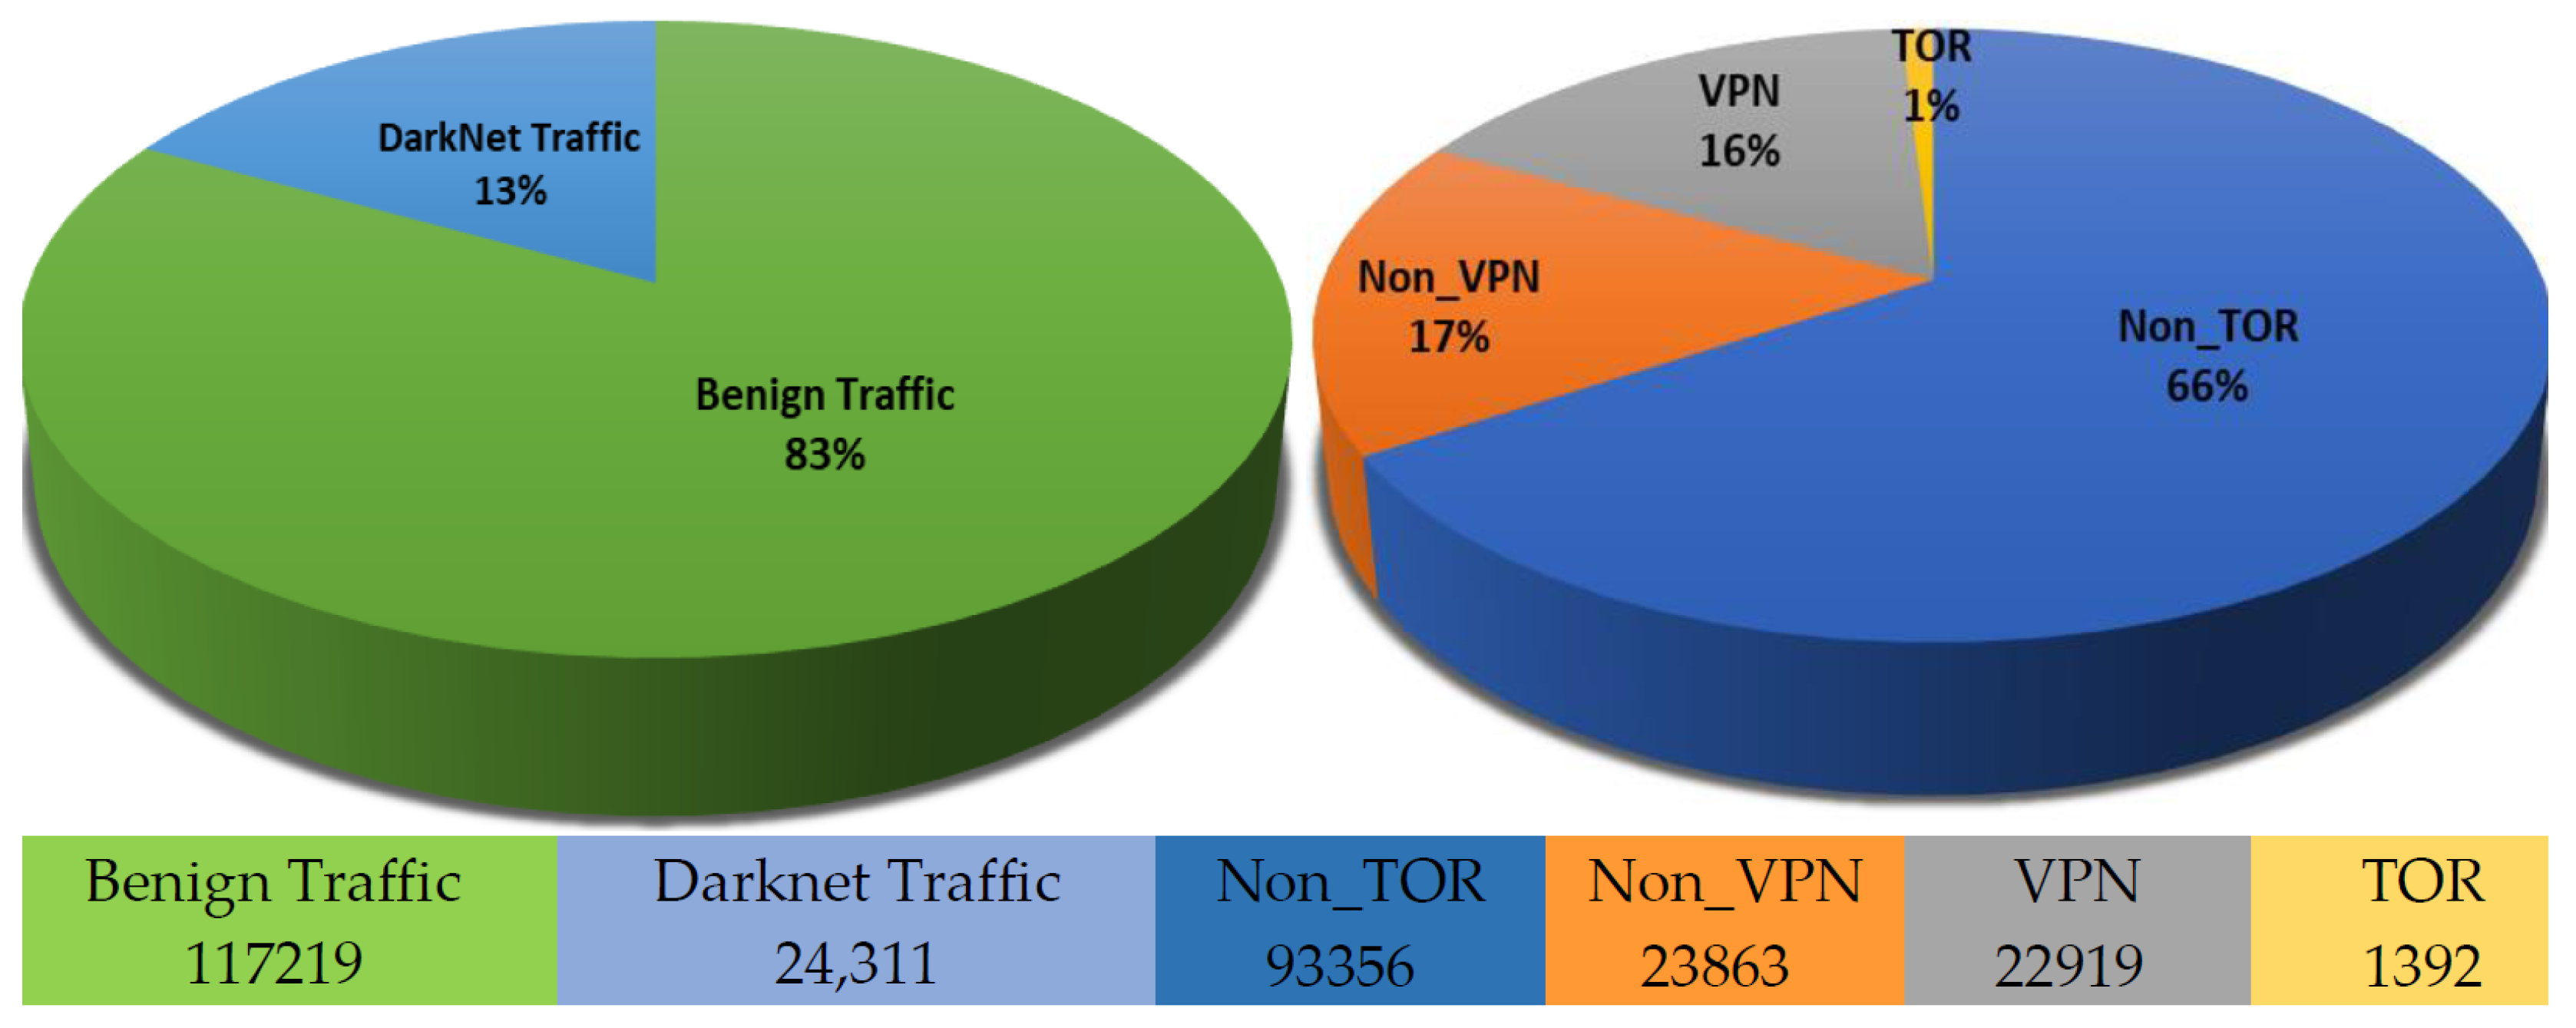 Darknet vpn dns tor browser mega